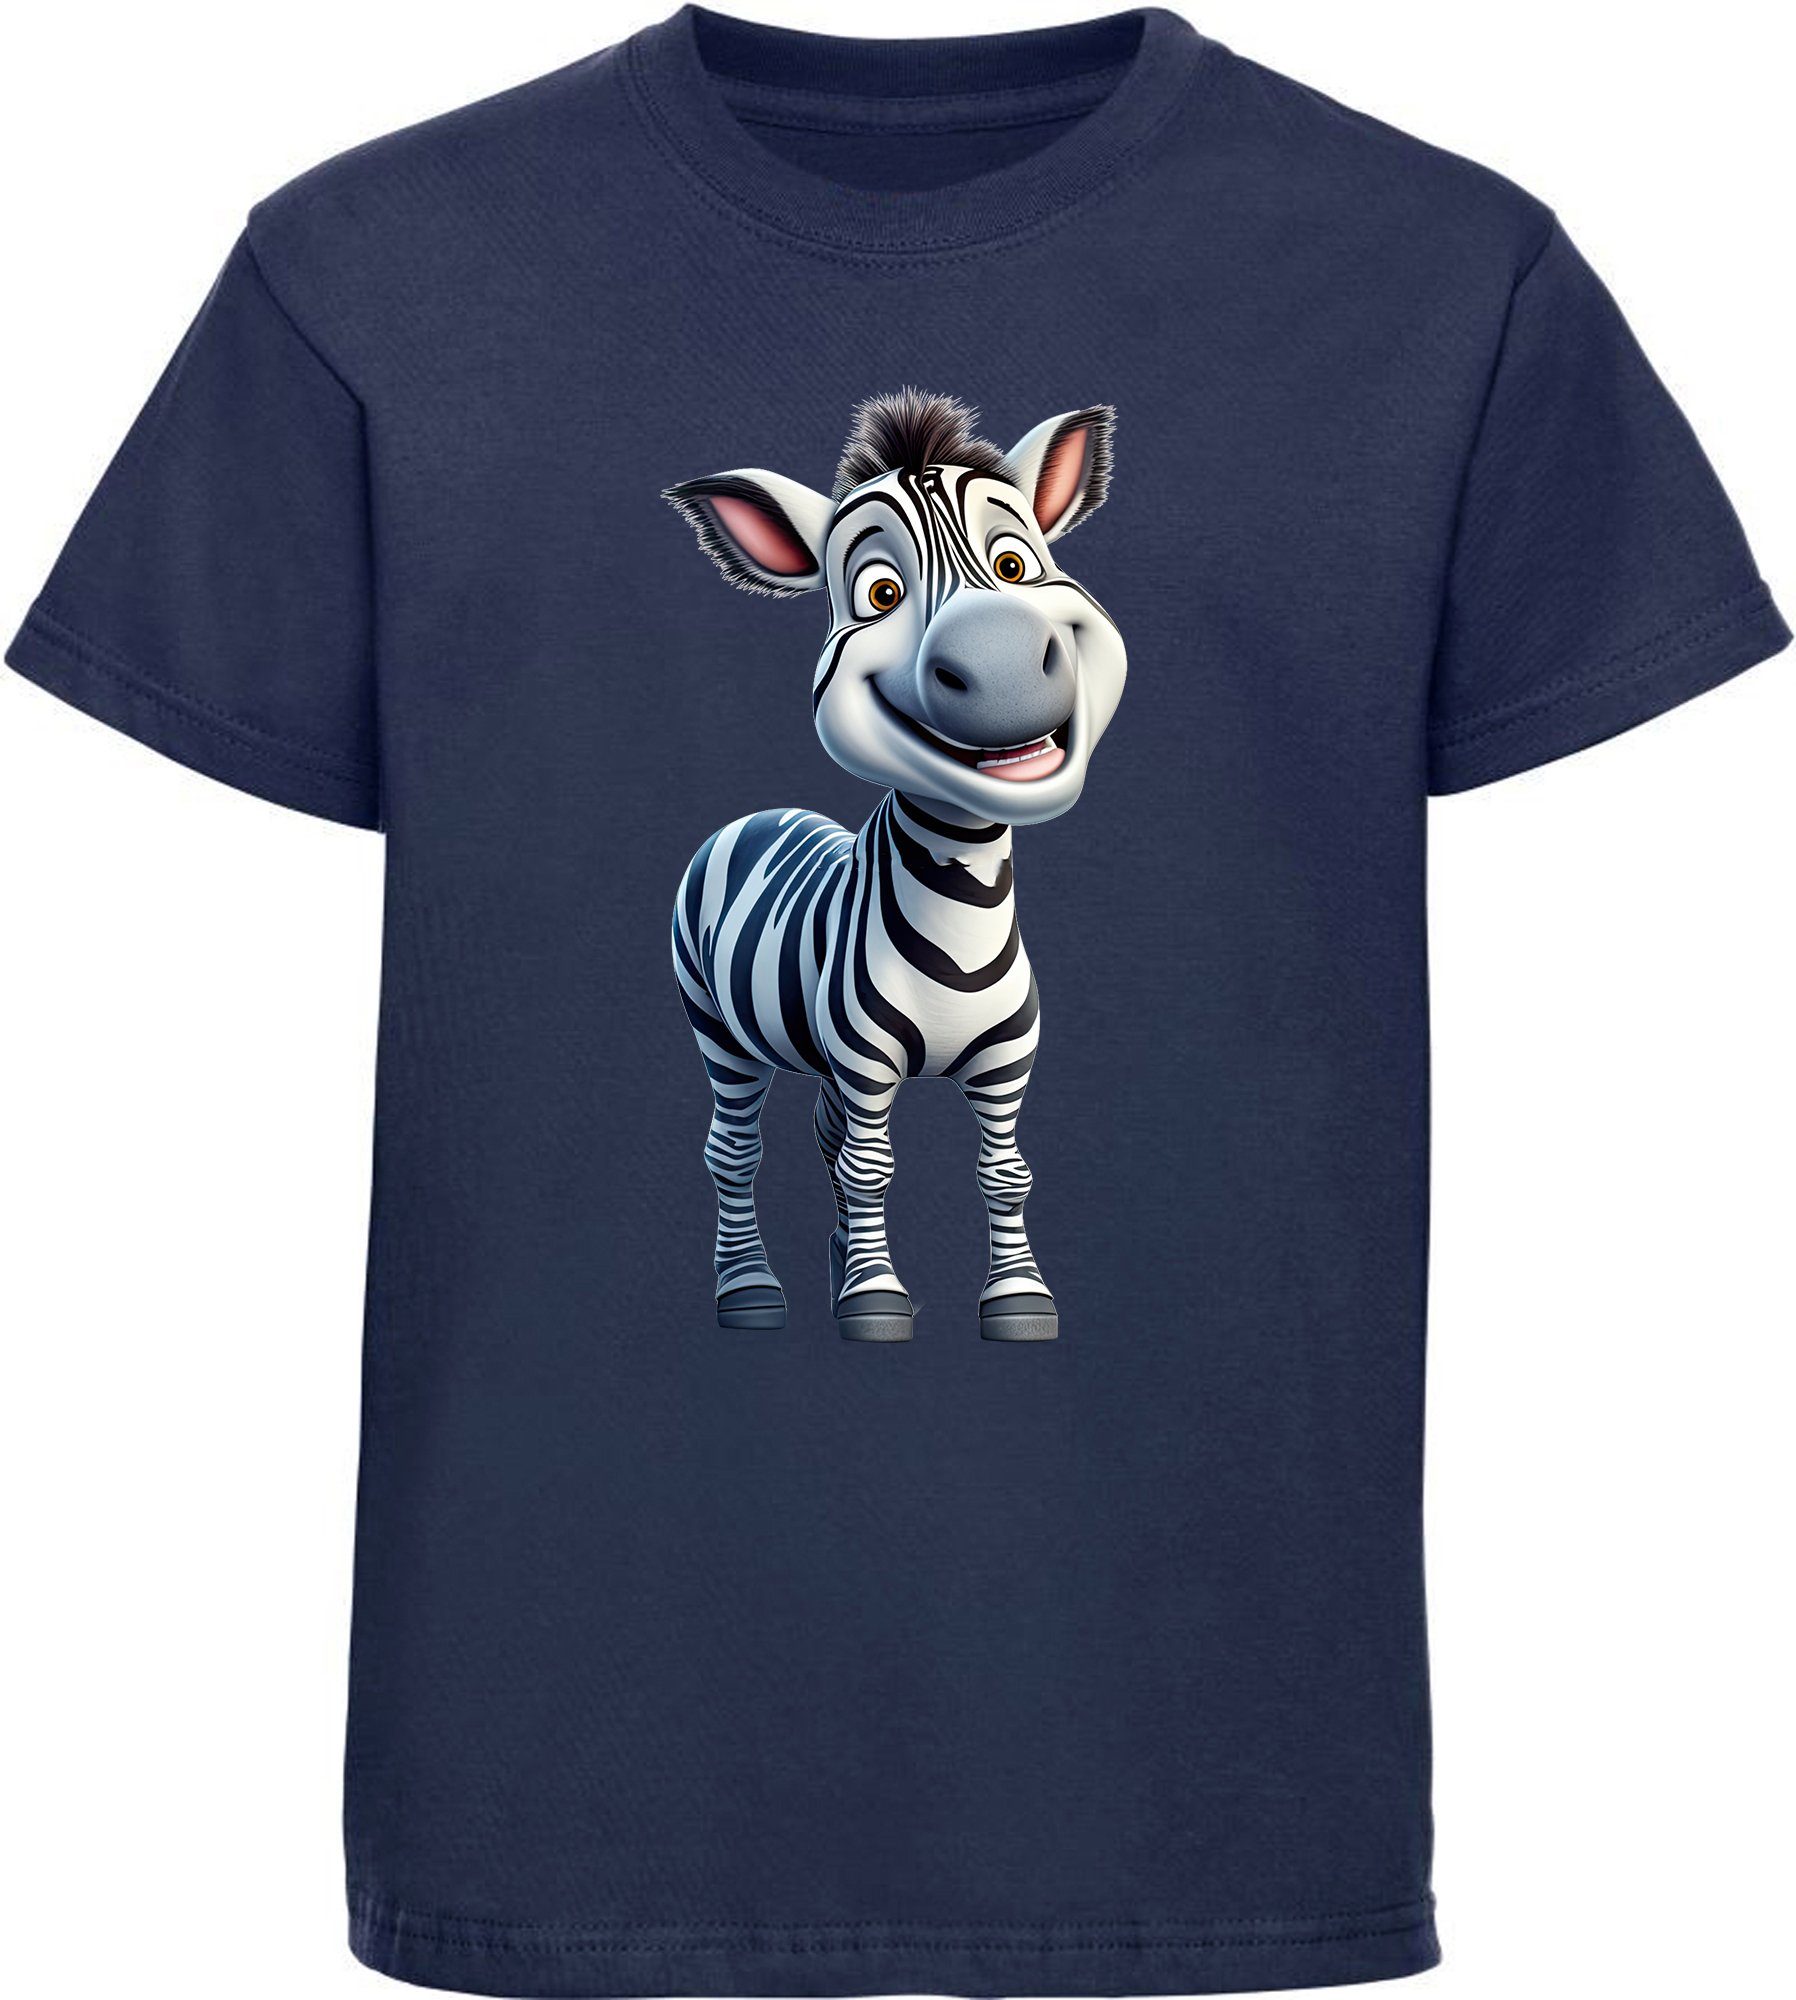 MyDesign24 T-Shirt Kinder Wildtier Print Shirt bedruckt - Baby Zebra Baumwollshirt mit Aufdruck, i280 navy blau